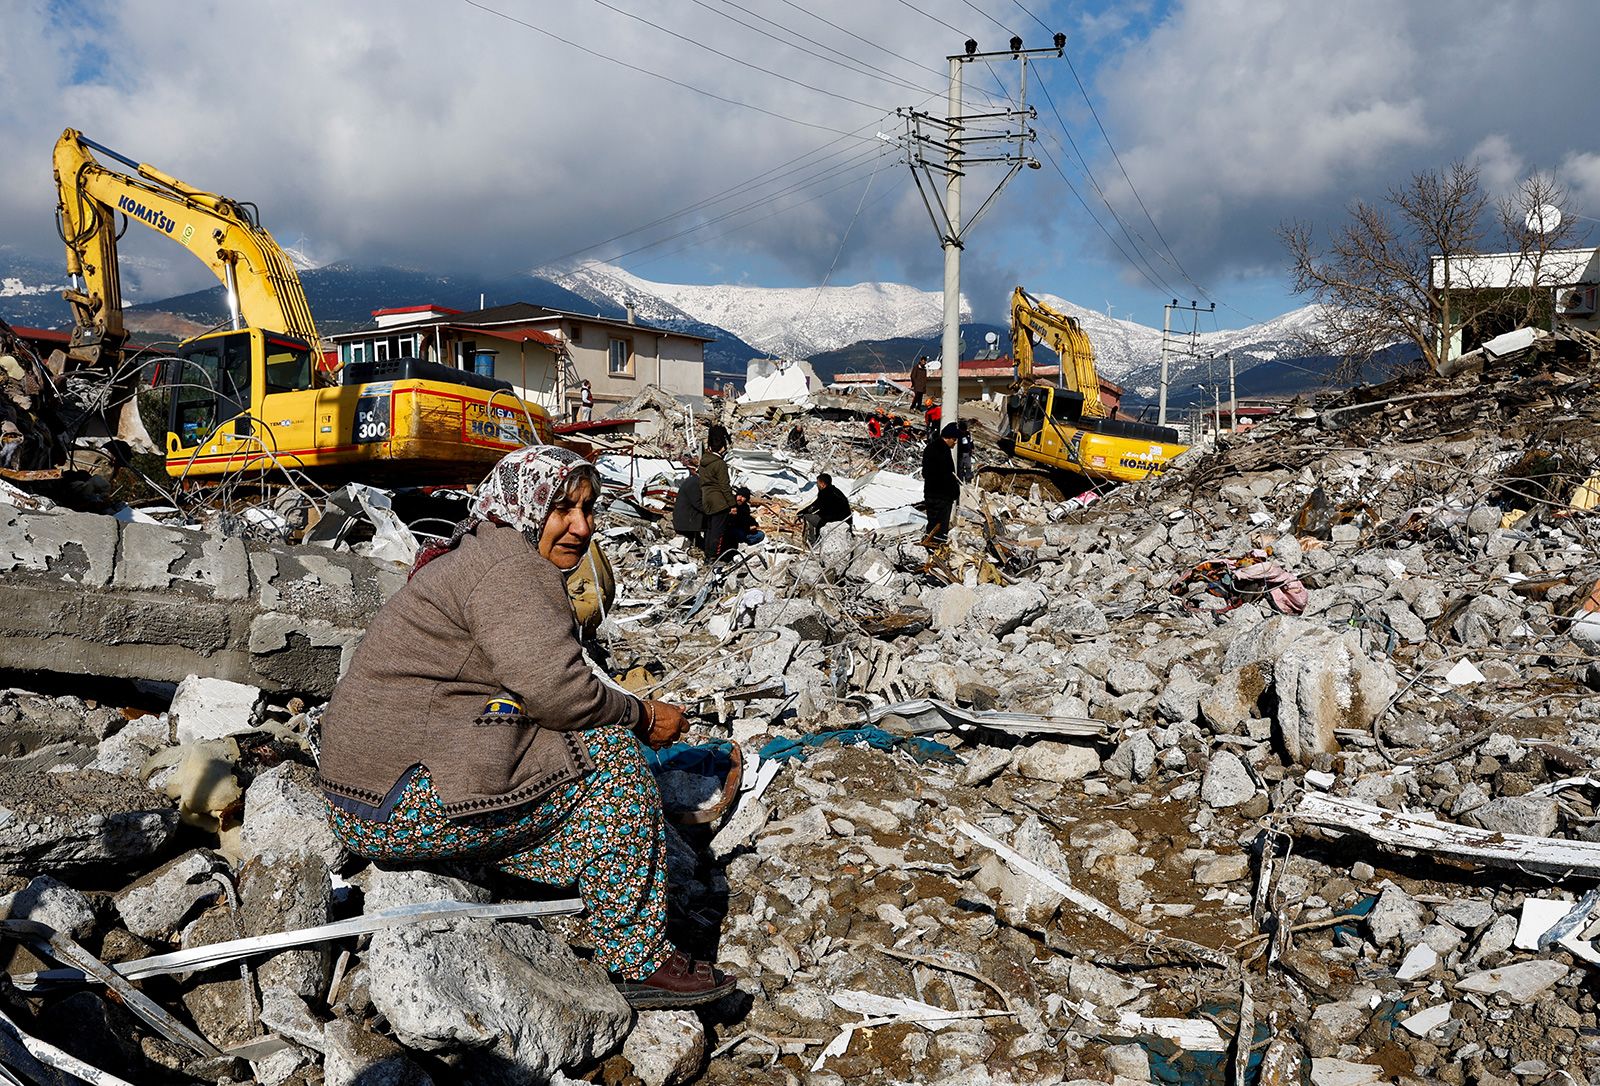 حیرت امدادگر سوییسی از میزان فاجعه زلزله ترکیه + عکس